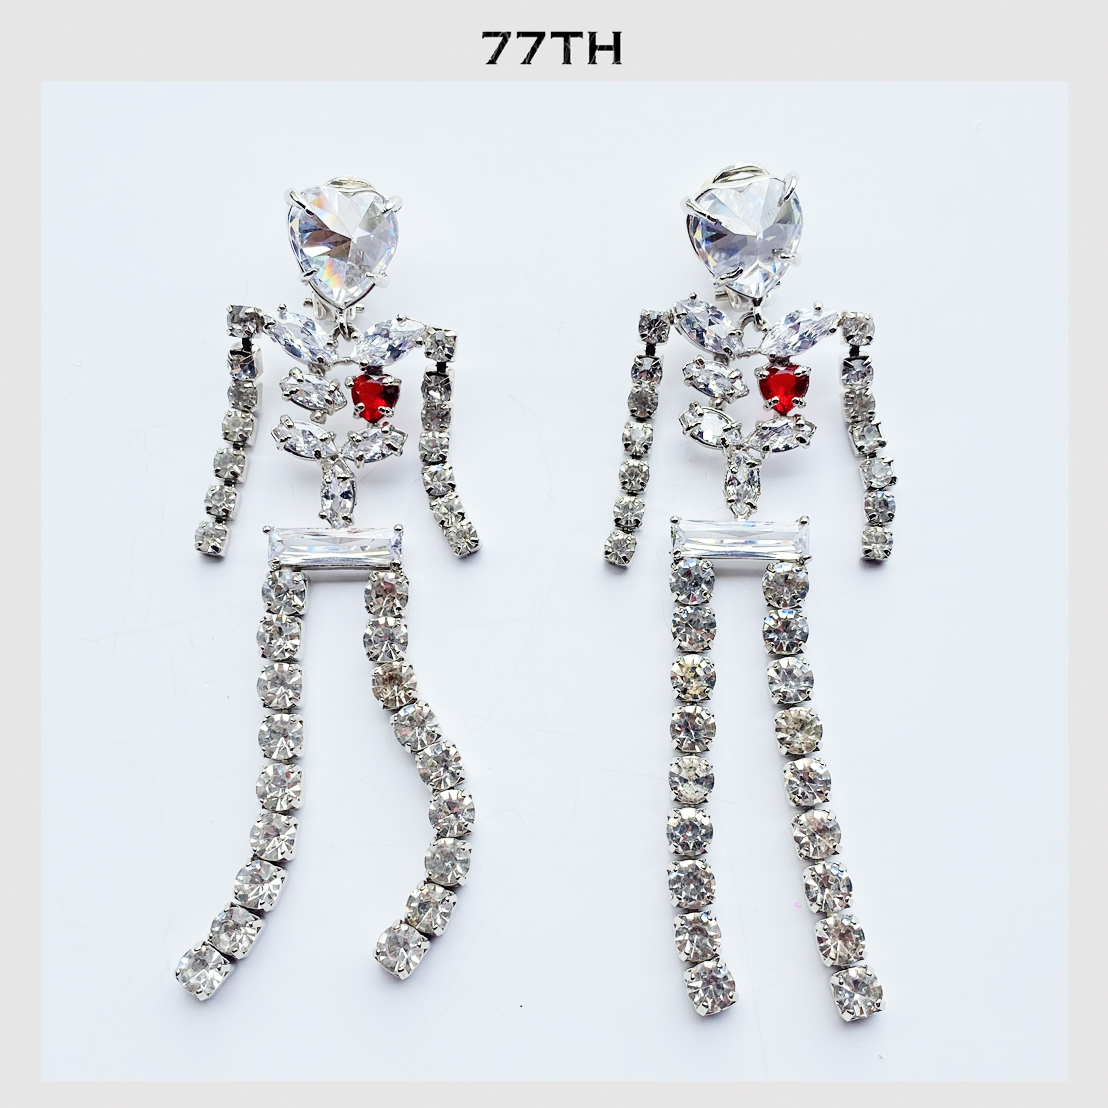 77th-Issue x 77th skeleton crystals earrings ต่างหูโครงกระดูก คริสตัล